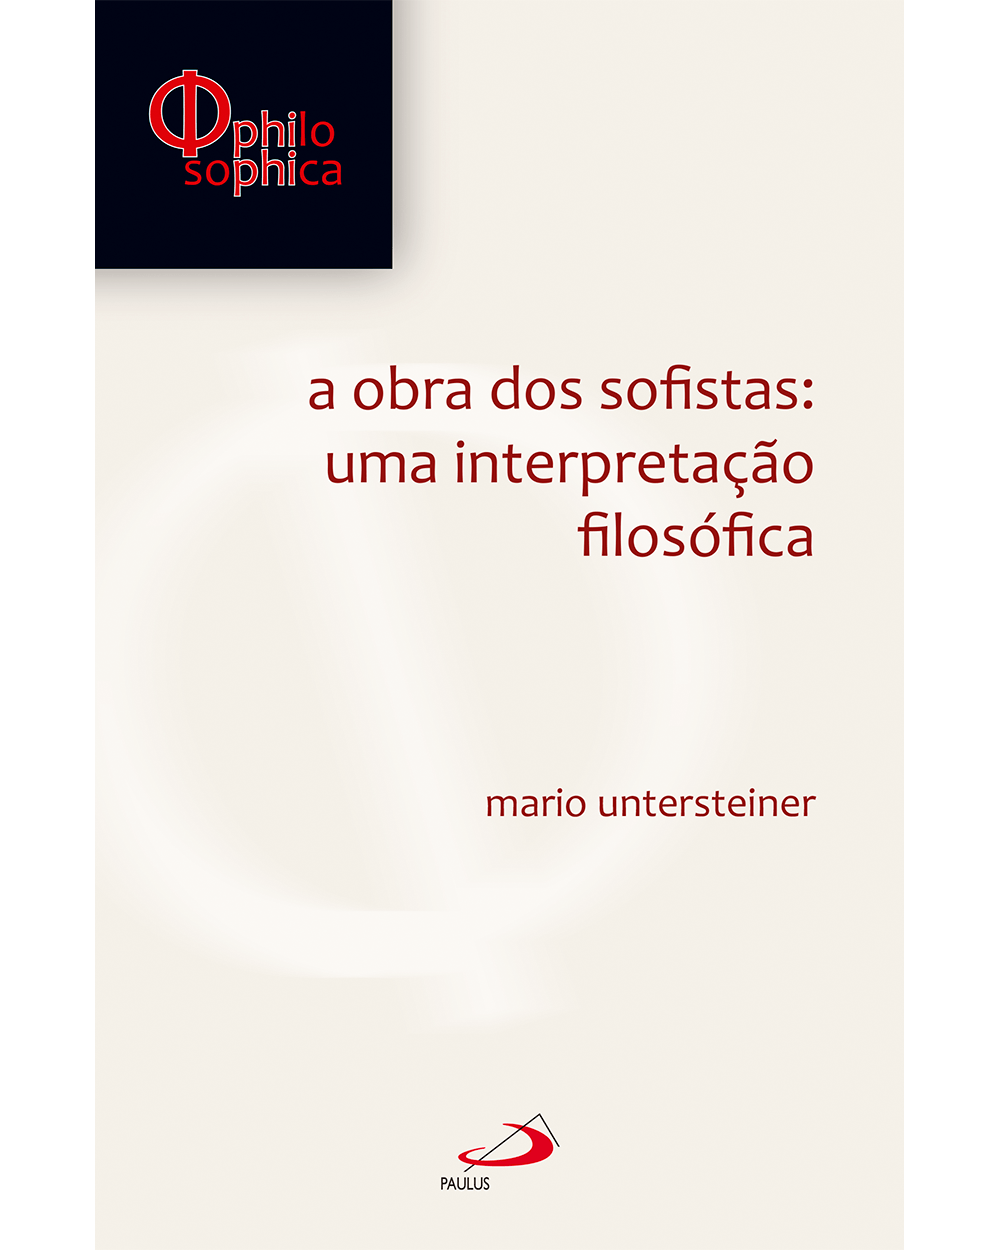 Linguagem e filosofia by Filosofia UFSC - Publicações - Issuu